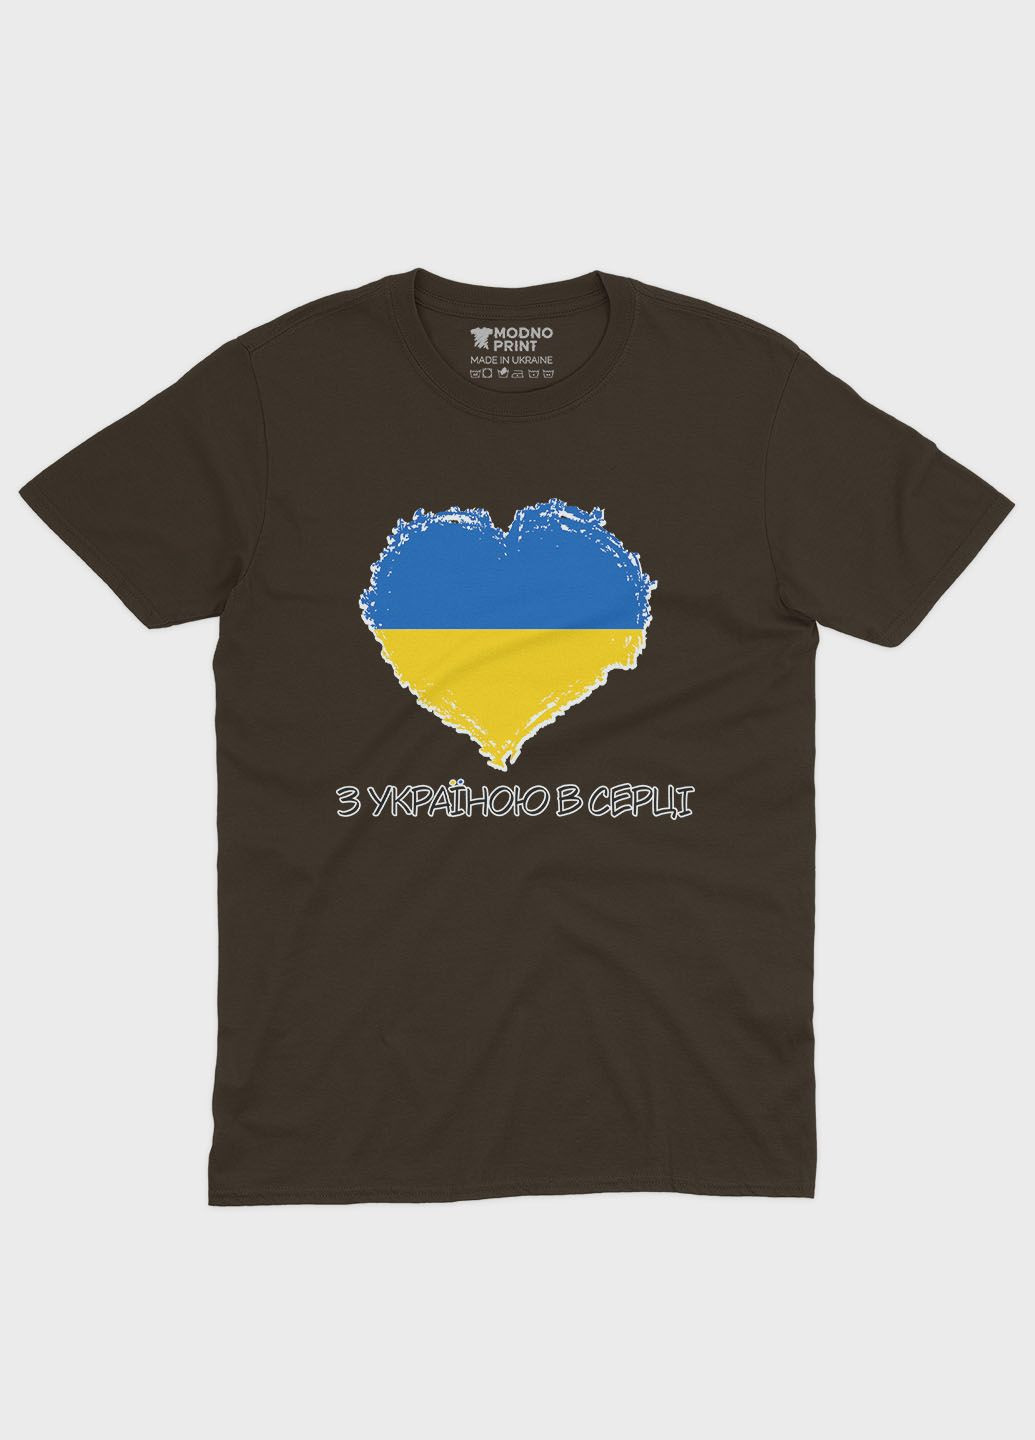 Коричневая летняя женская футболка с патриотическим принтом с украиной в сердце (ts001-2-dch-005-1-053-f) Modno